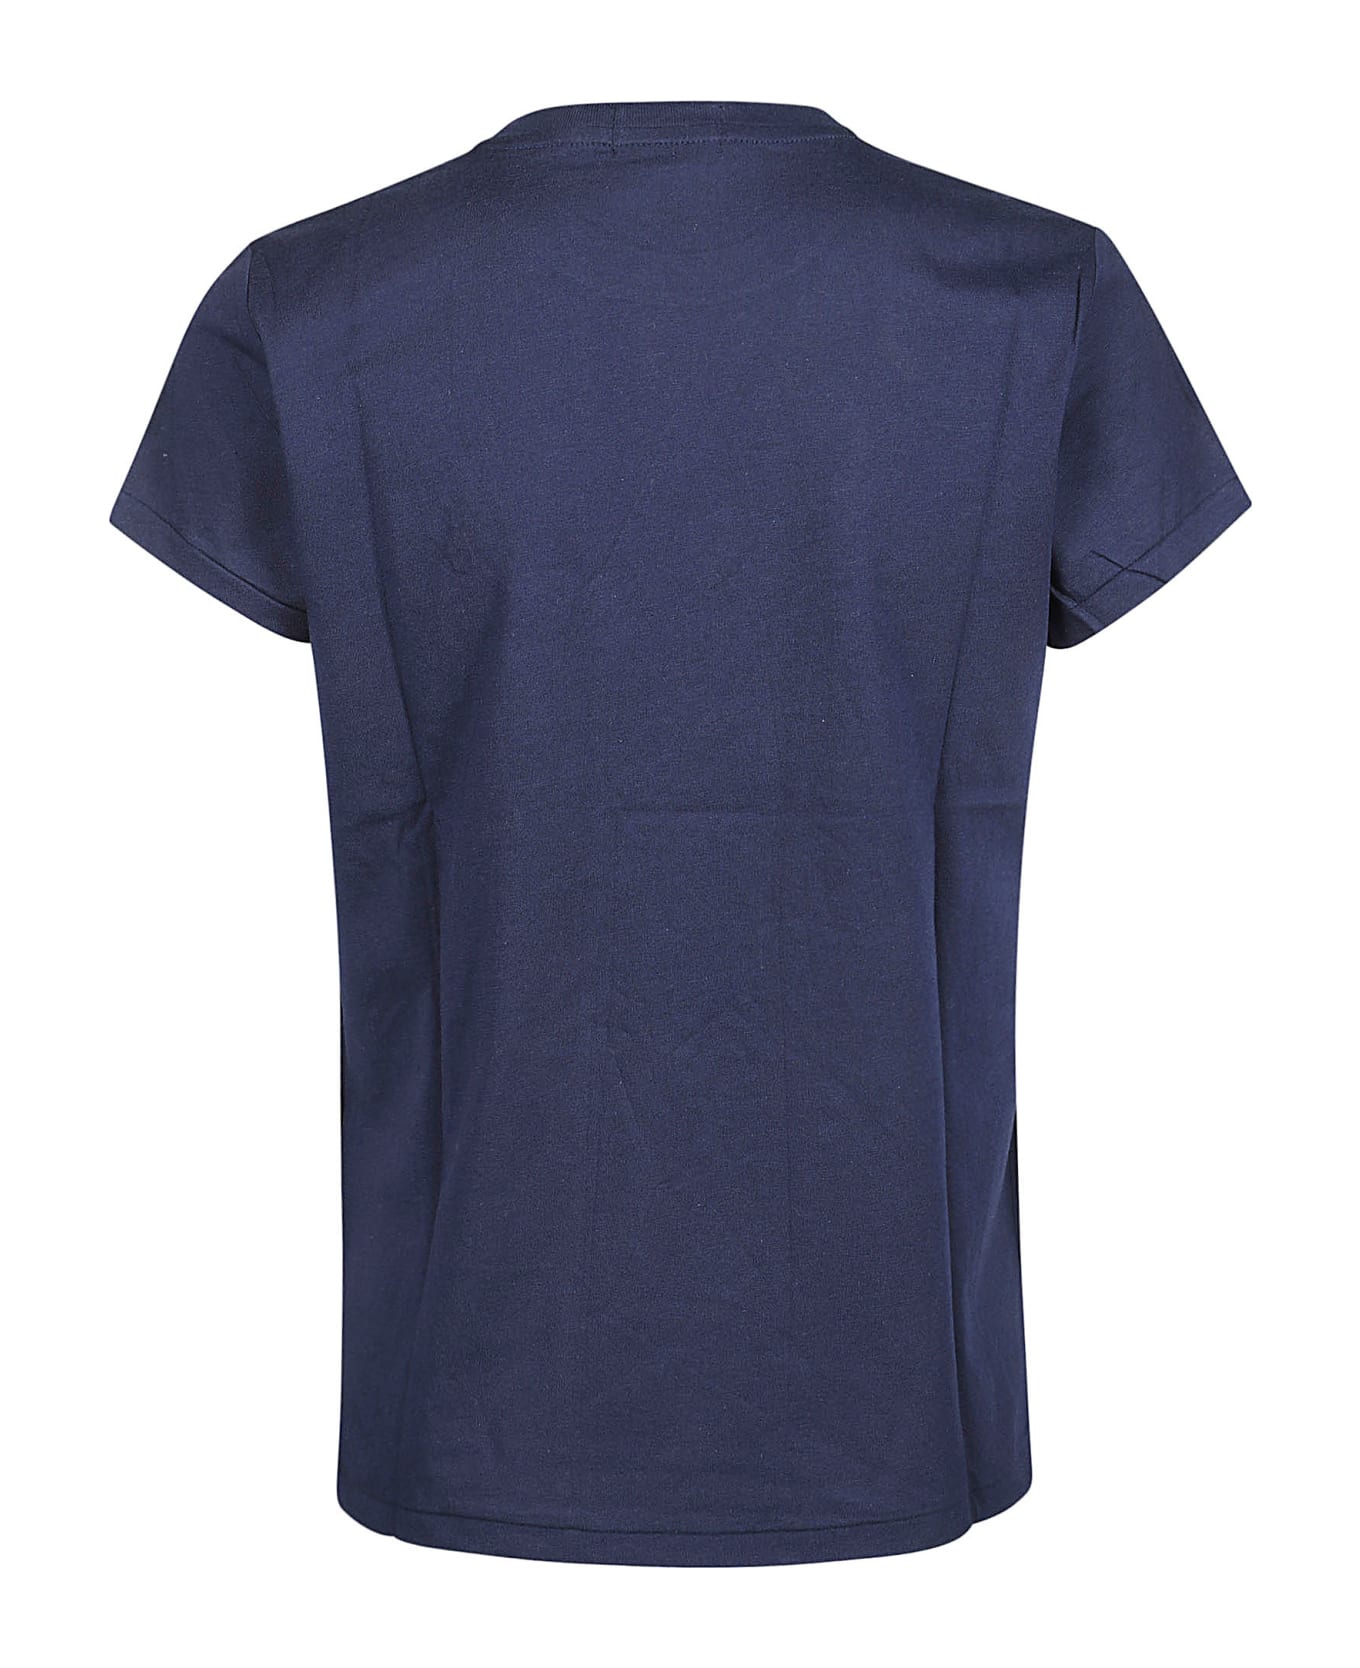 Polo Ralph Lauren New T-shirt - Cruise Navy Tシャツ